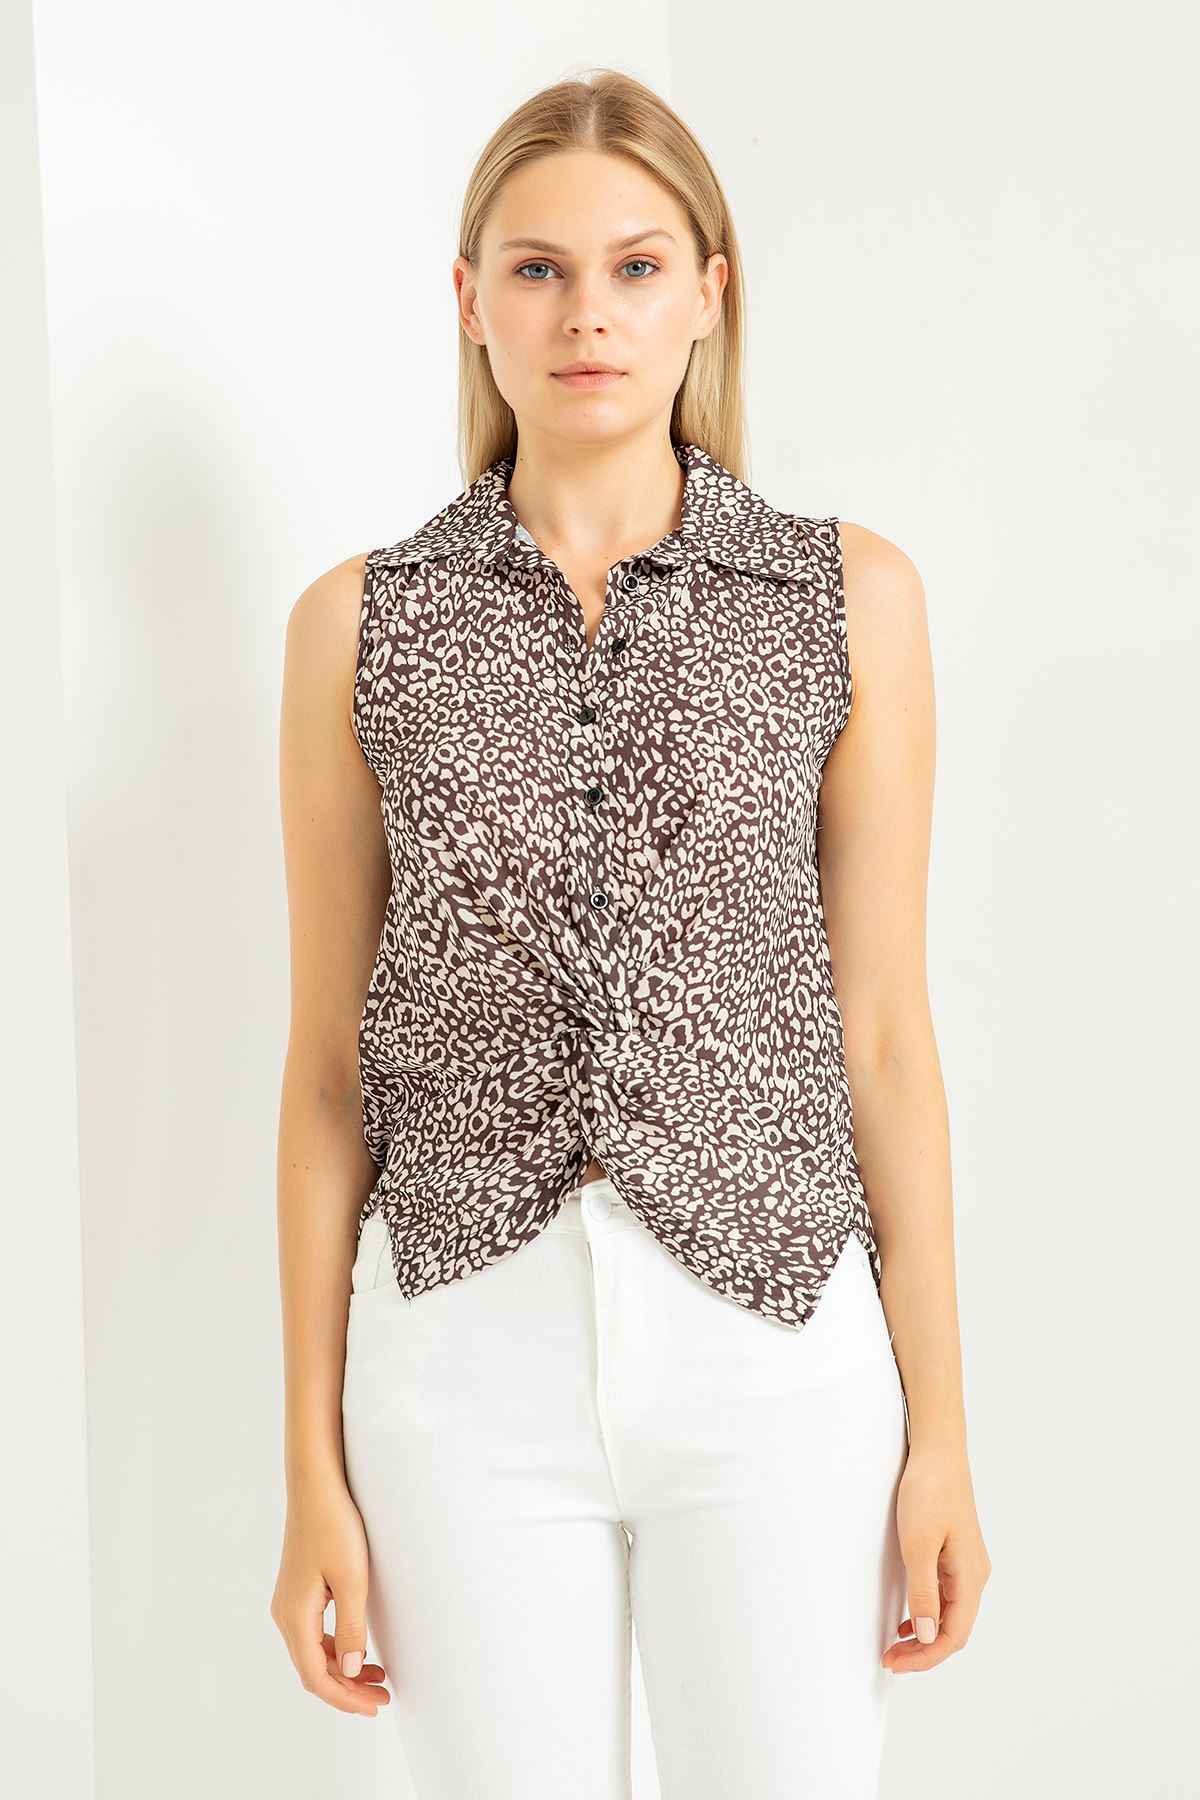 Jessica Fabric Sleeveless Shirt Collar Auger Leopard Print Blouse - Chanterelle 